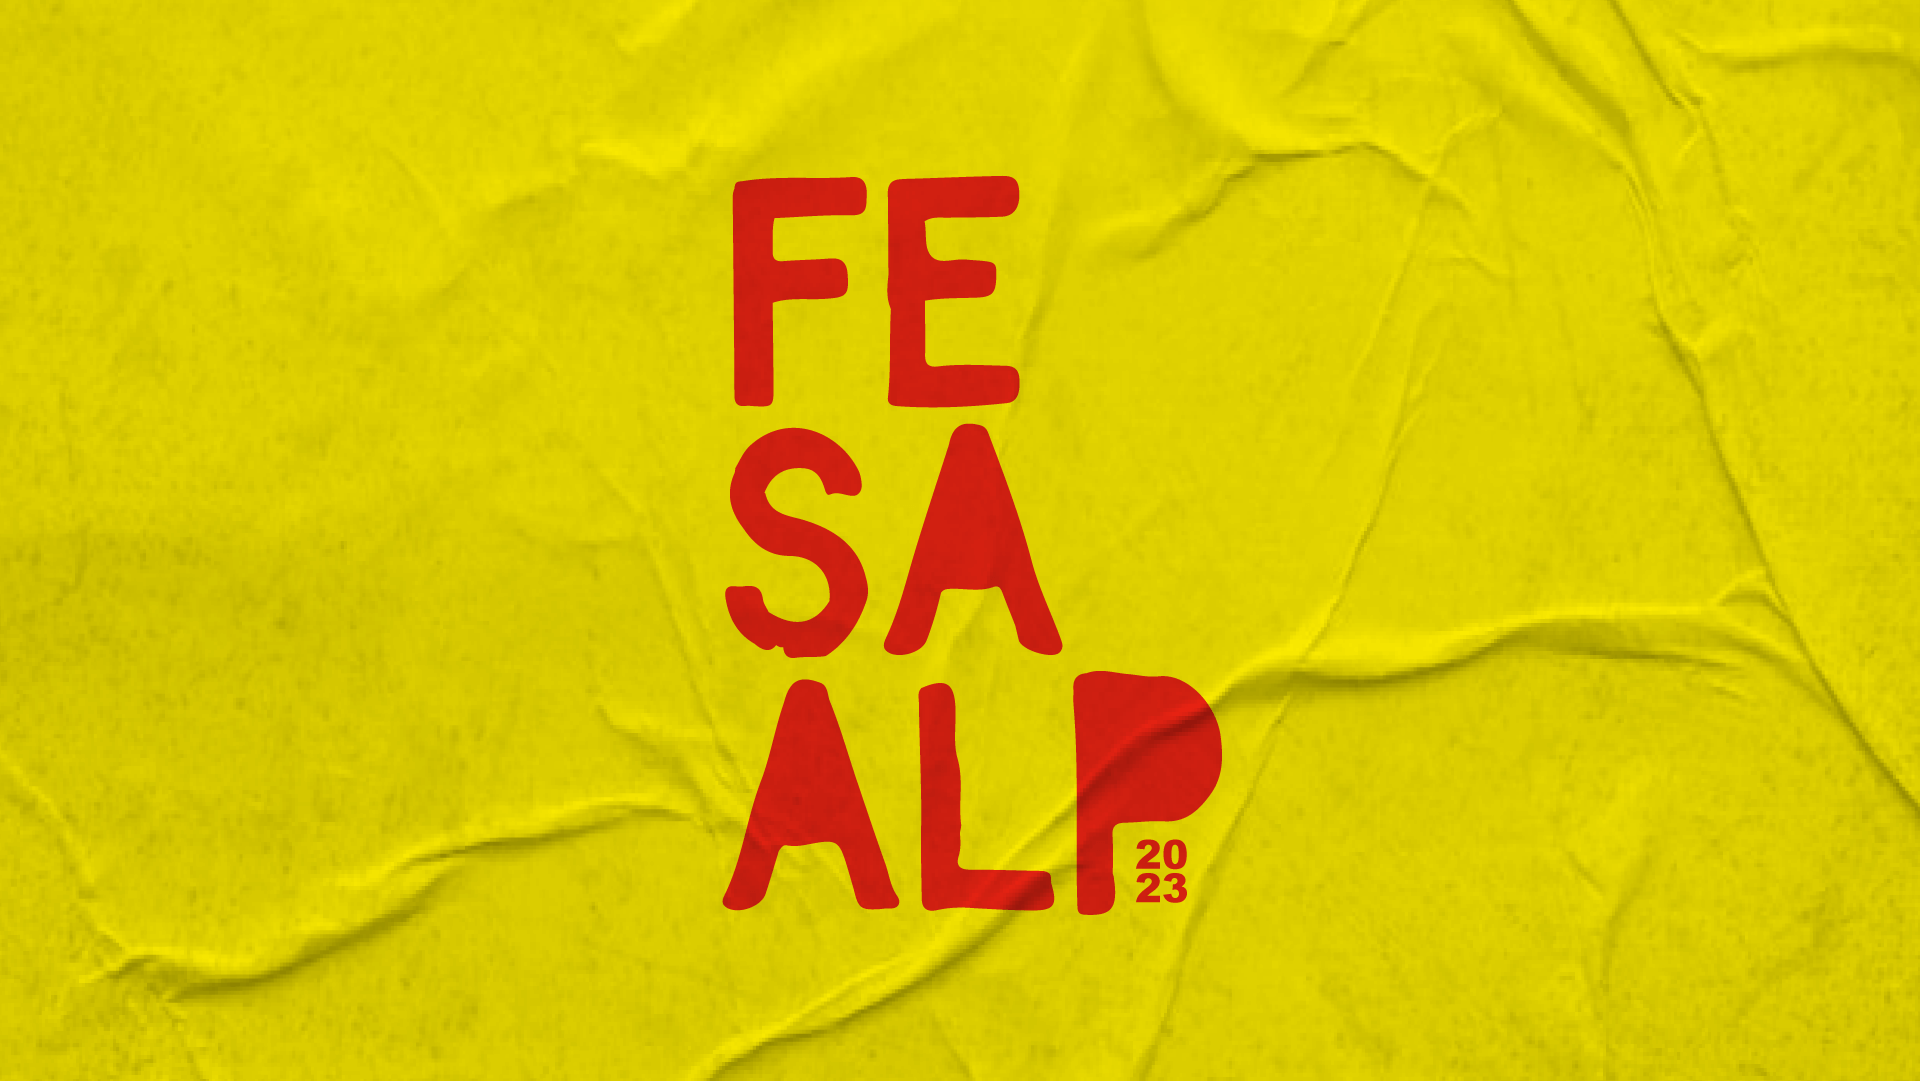 (c) Fesaalp.com